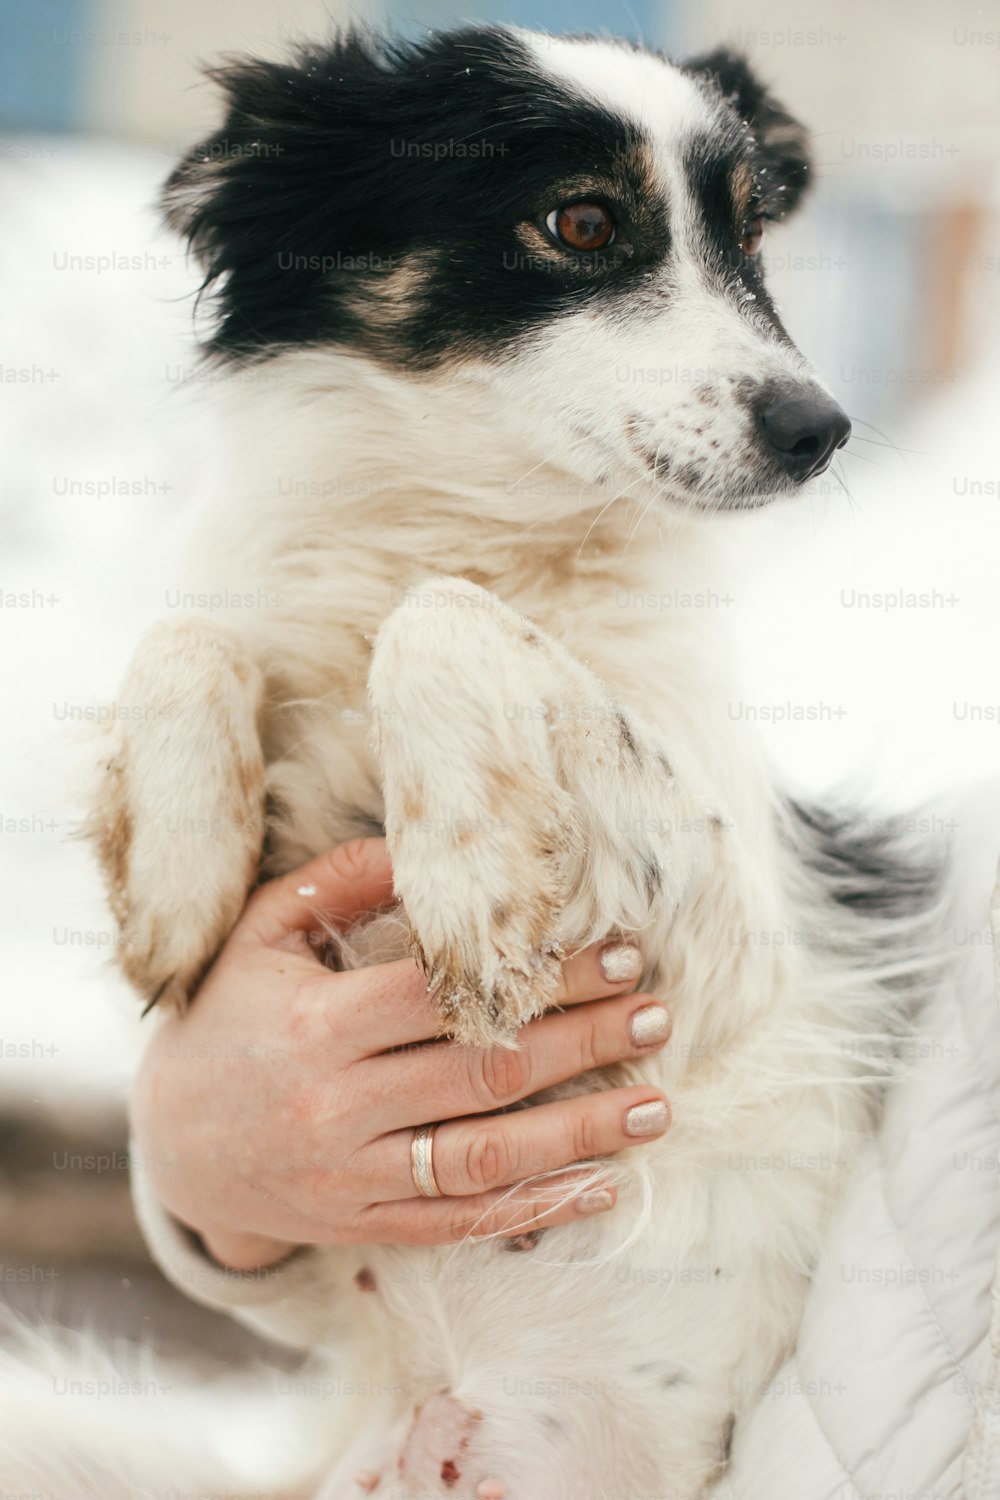 Simpatico cane spaventato nelle mani di persona nel parco invernale innevato. Persone che abbracciano il piccolo cagnolino bianco e nero al rifugio. Concetto di adozione. Cucciolo soffice randagio